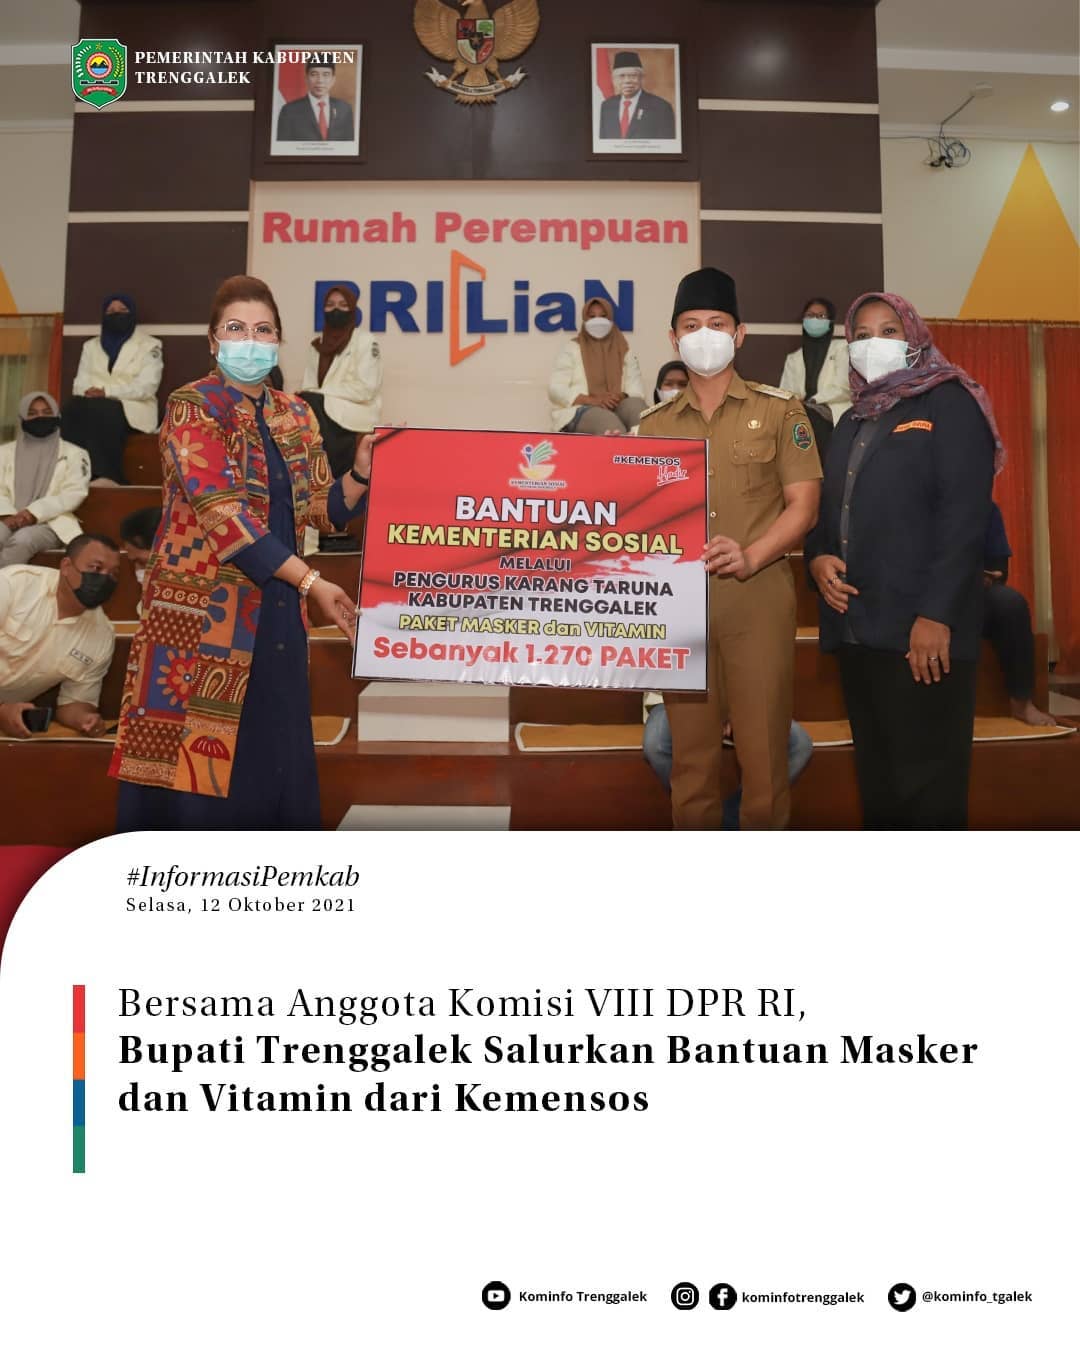 Bersama Anggota Komisi VIII DPR RI, Bupati Trenggalek Salurkan Bantuan Masker dan Vitamin dari Kemensos